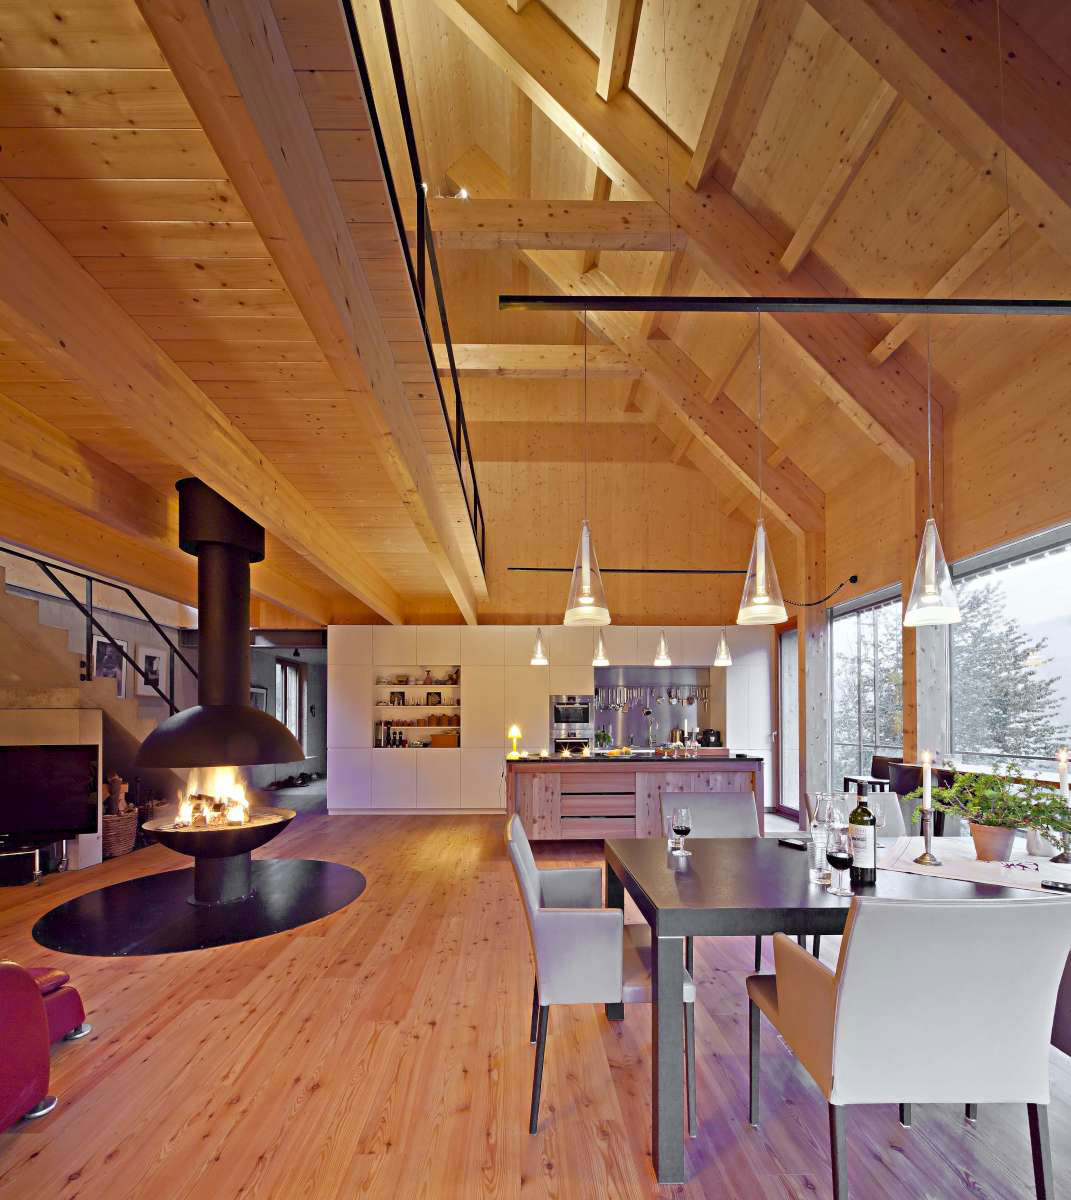 Celkové řešení interiéru je designově úzce spojeno s provedením fasády z modřínového dřeva